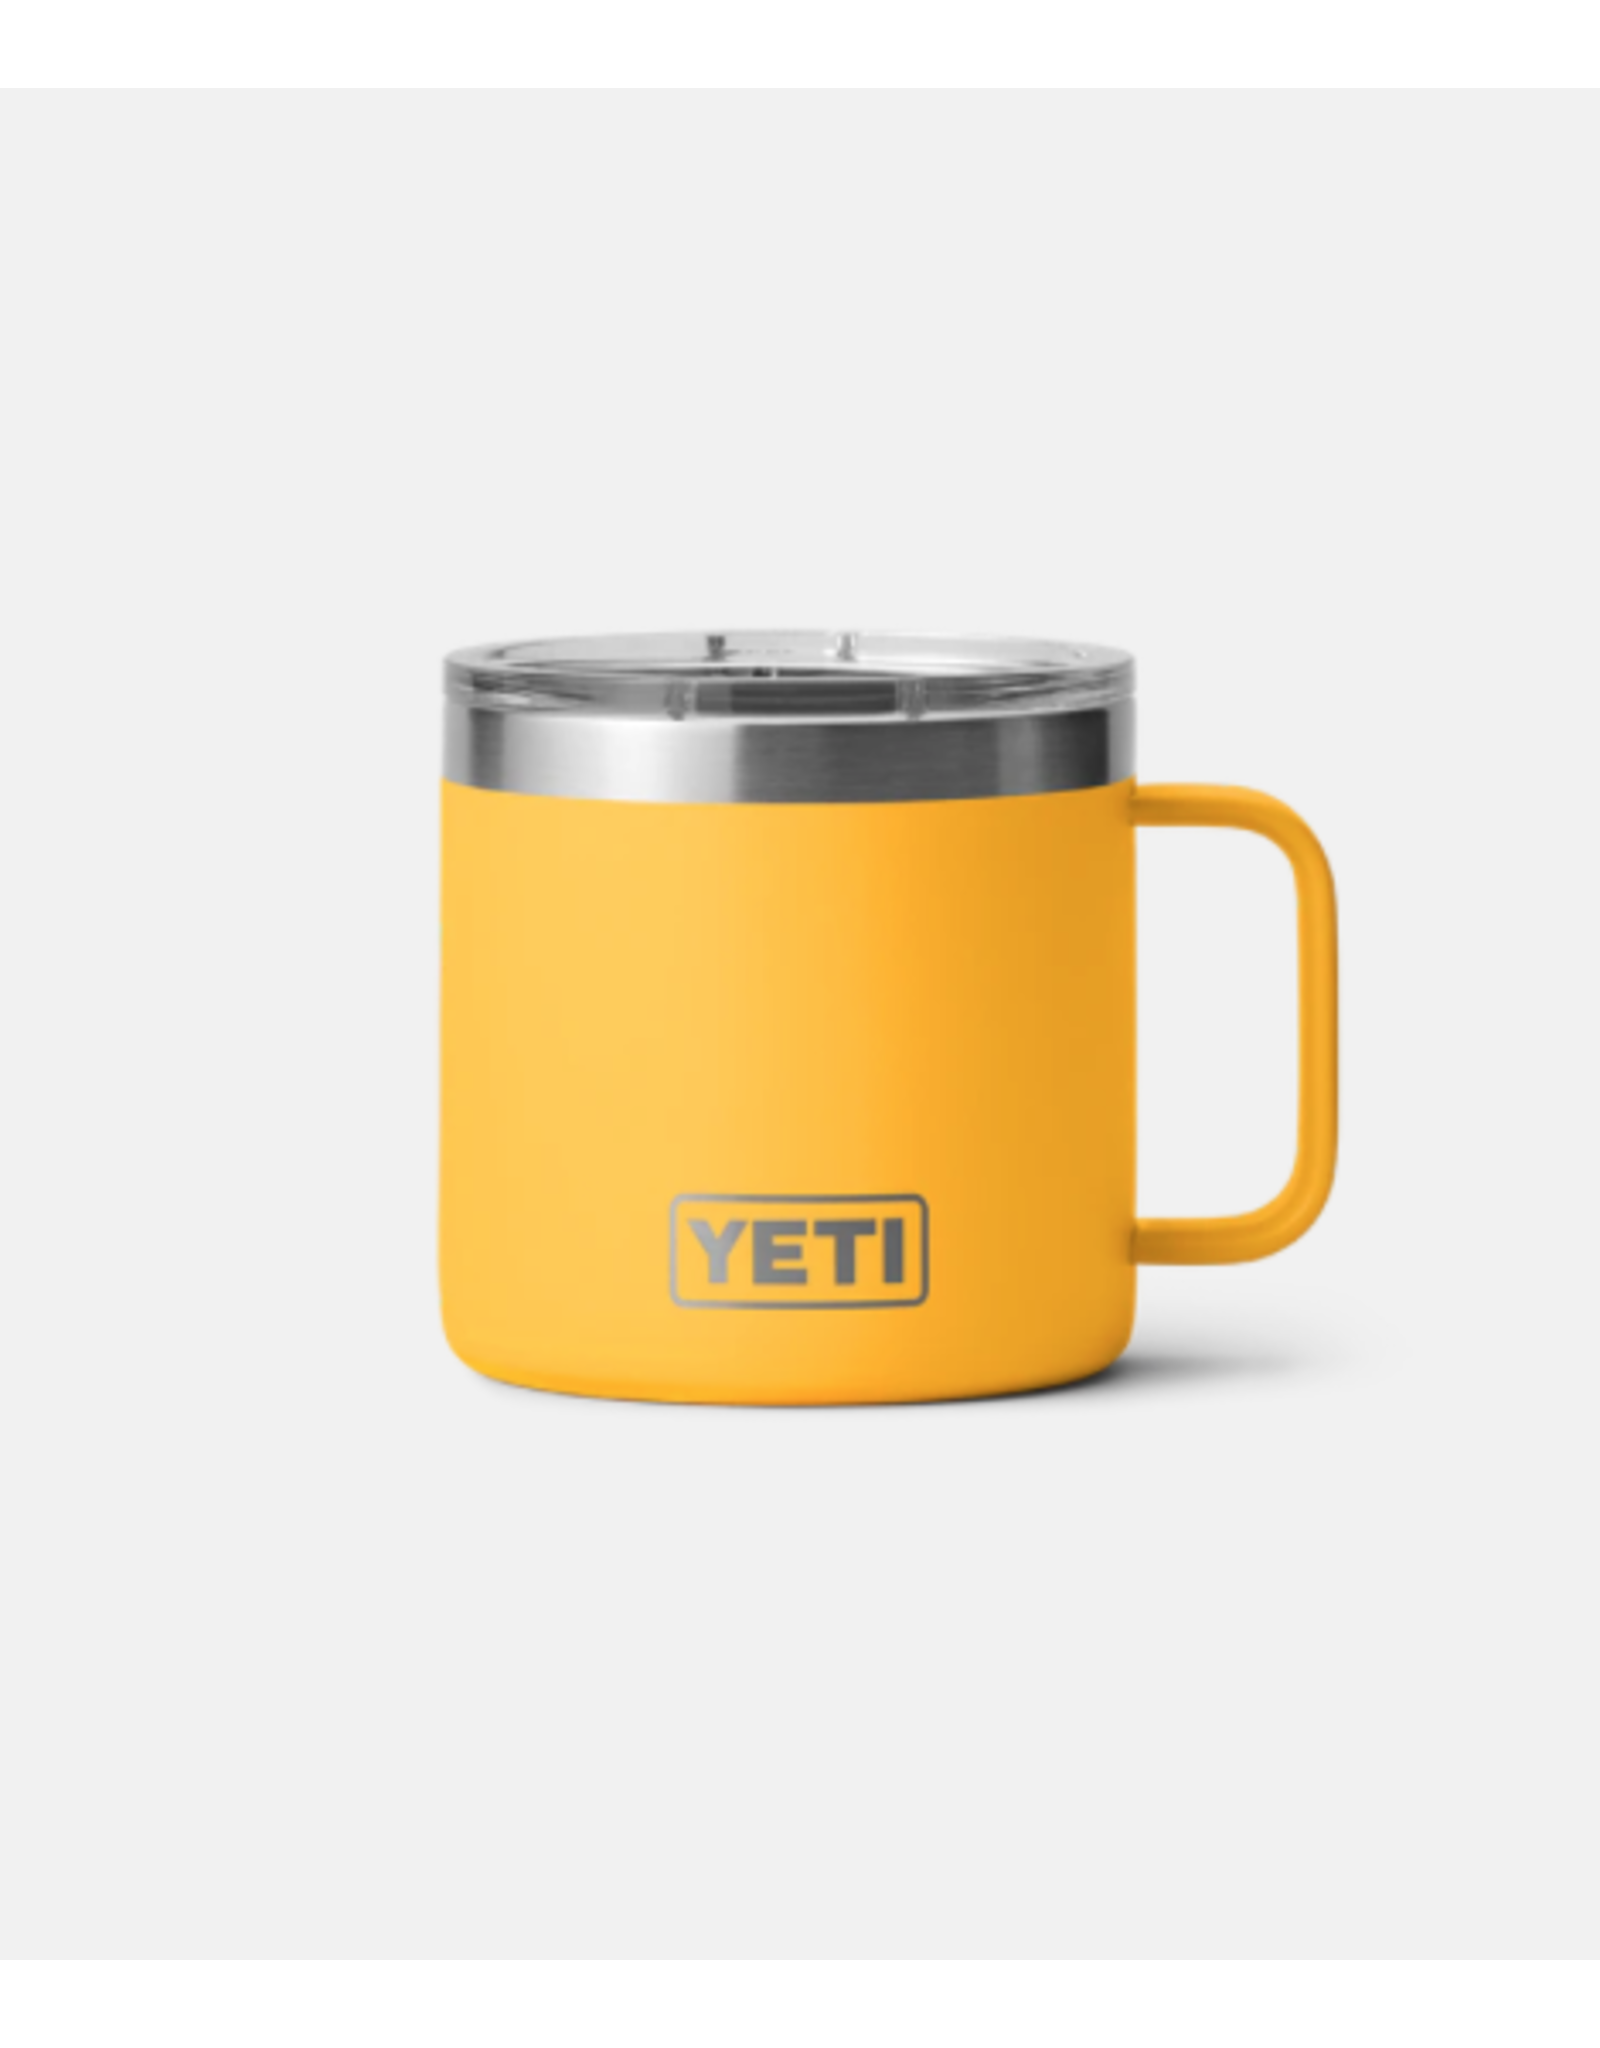 Yeti Rambler 14oz Coffee Mug/Camping Mug Review! 